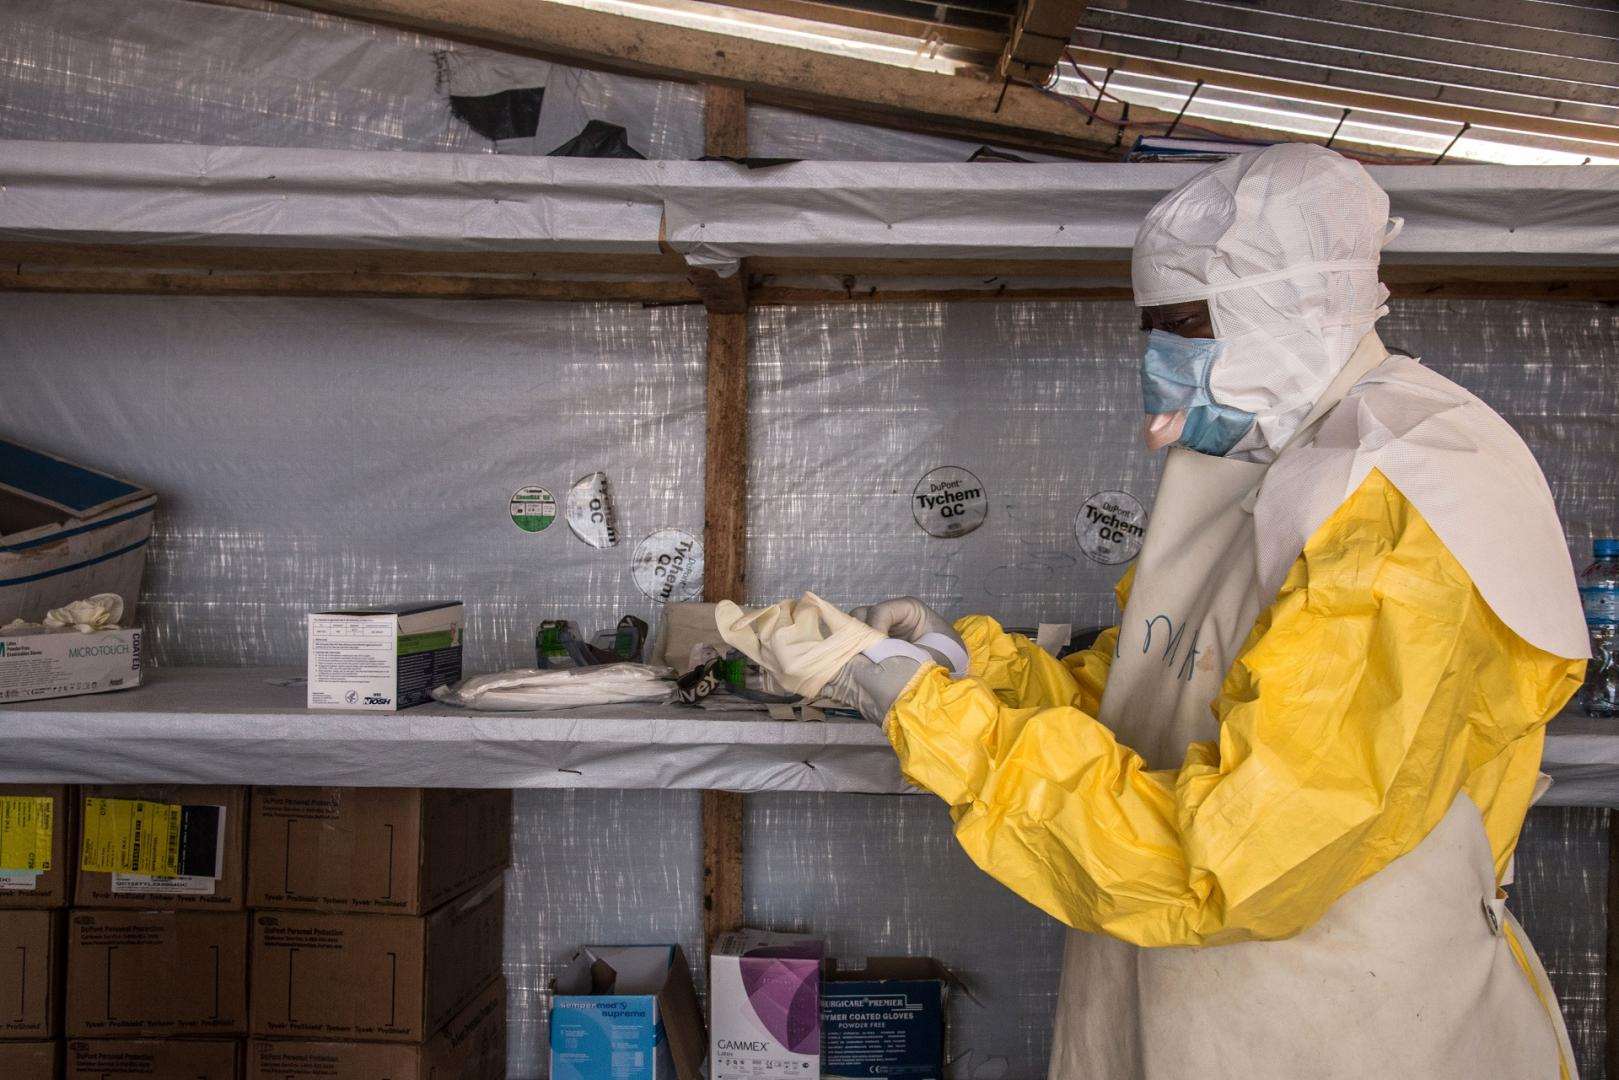 Ιός Μάρμπουργκ: Εντοπίστηκαν δύο κρούσματα του θανατηφόρου ιού στην Αφρική